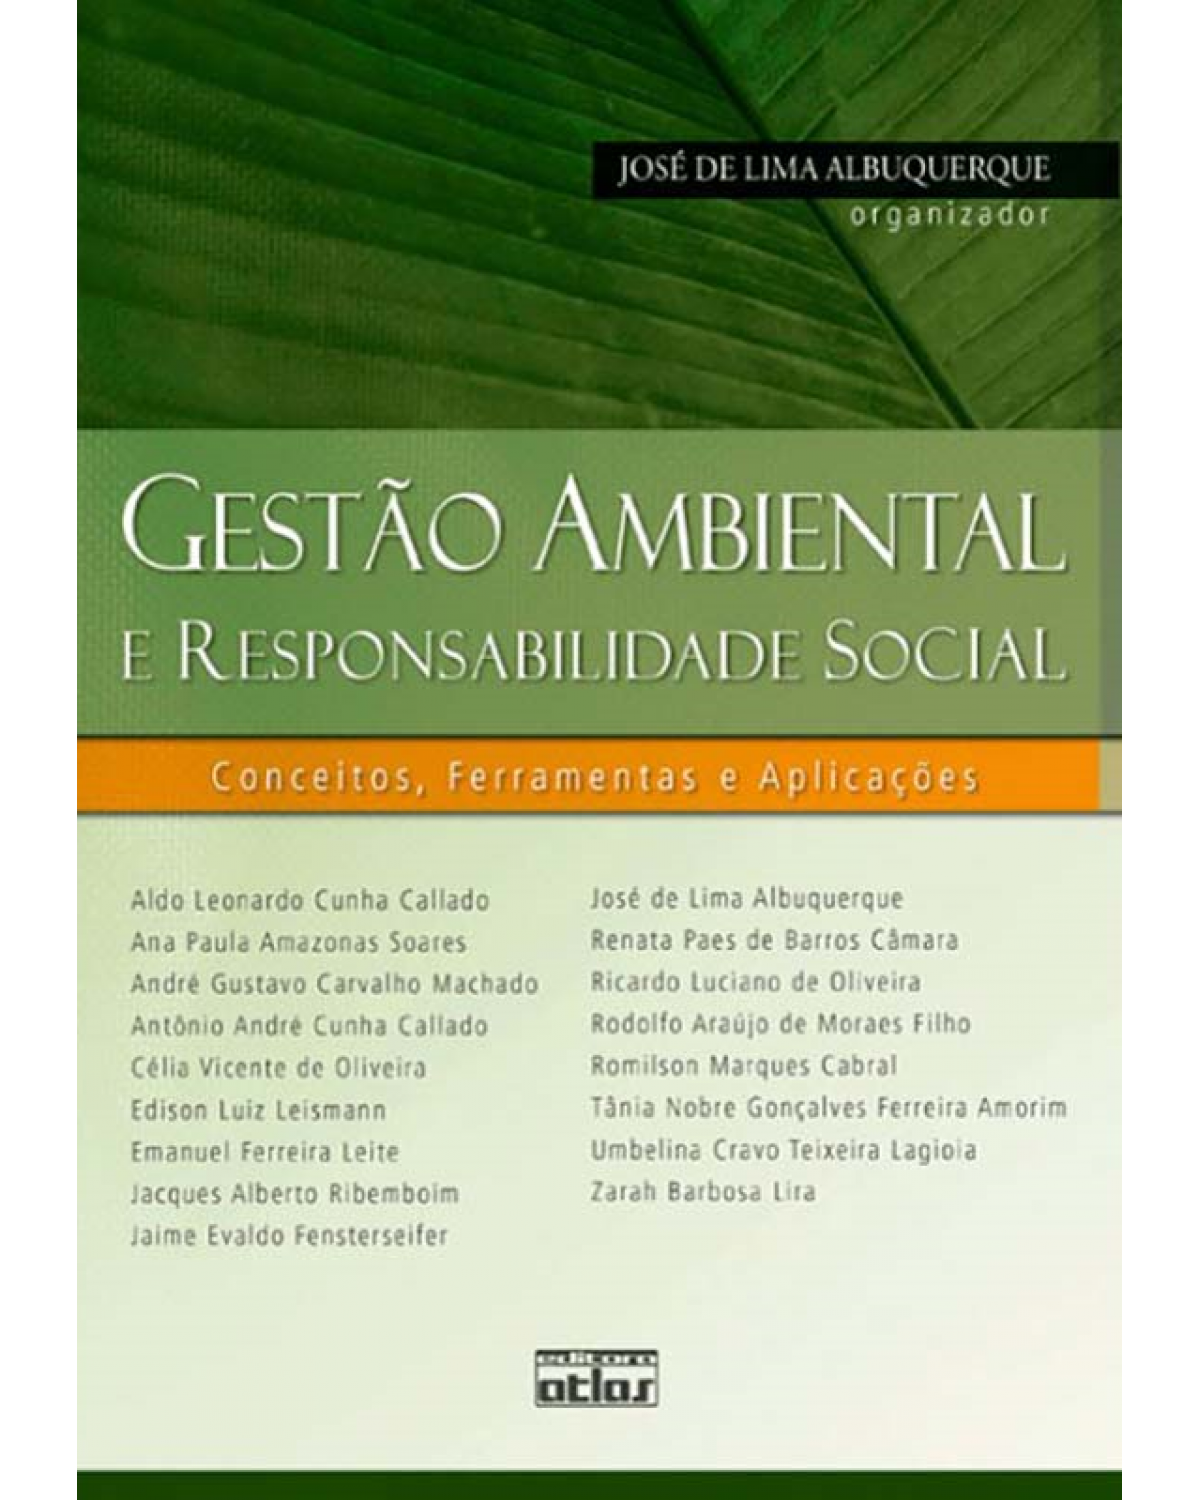 Gestão ambiental e responsabilidade social - Conceitos, ferramentas e aplicações - 1ª Edição | 2009